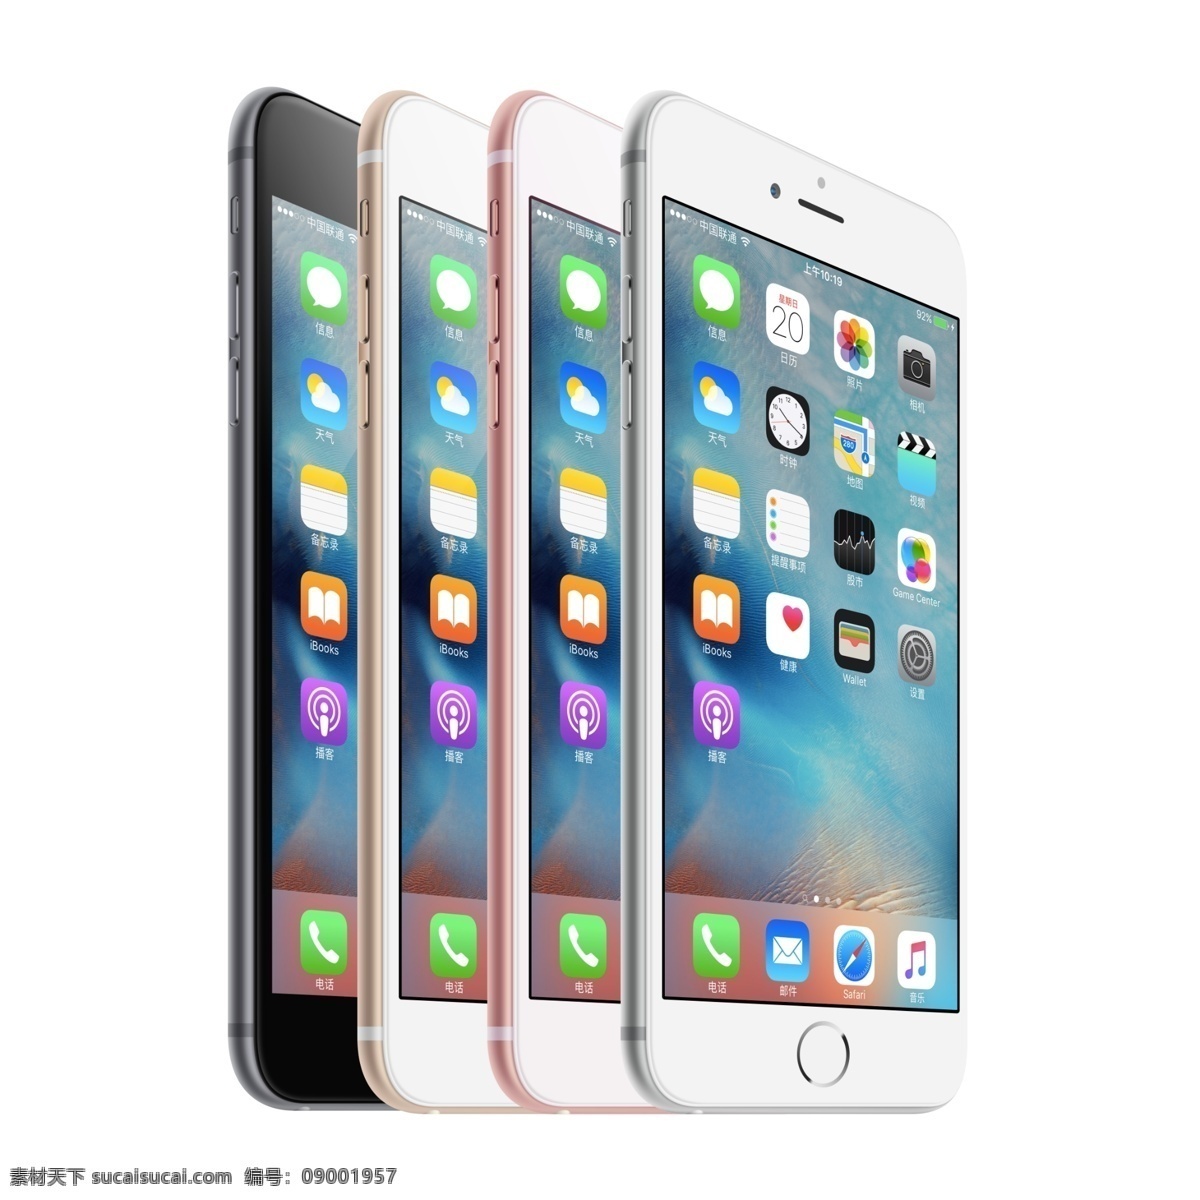 苹果 iphone6 plus 苹果6 6p 6plus 6splus 6s 苹果6s iphone6s 6sp apple 玫瑰金6 手机 分层 白色